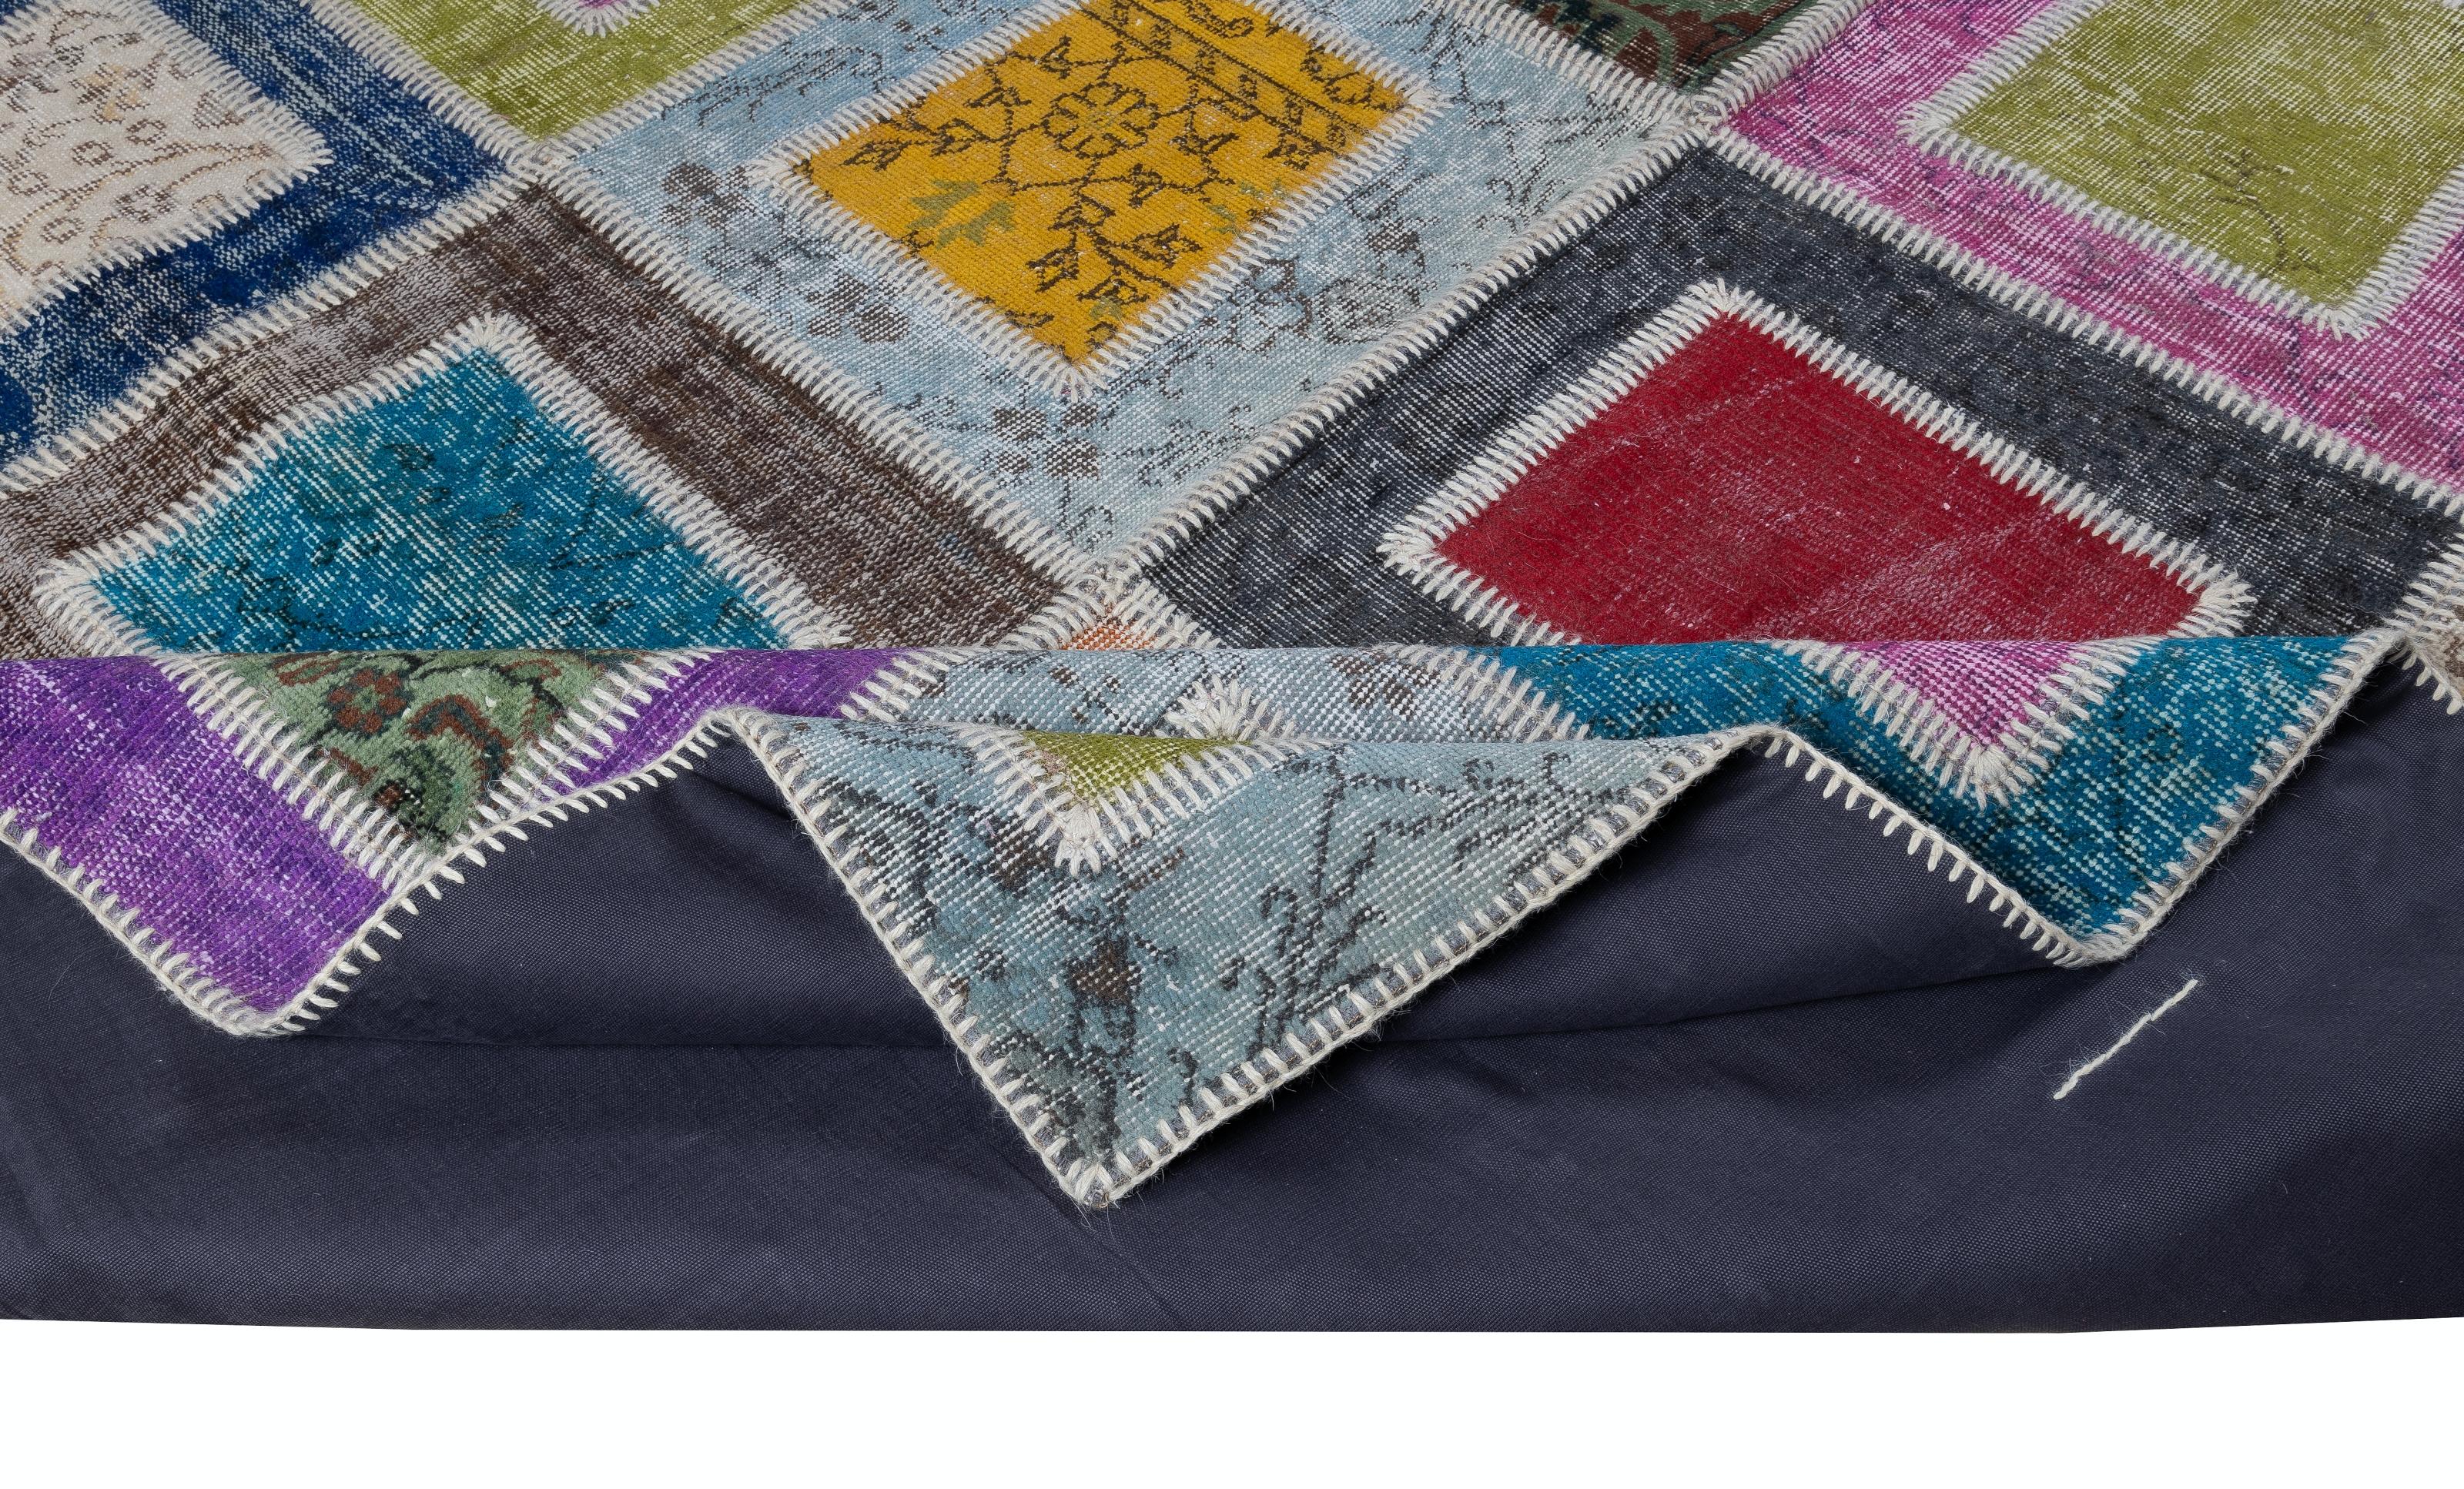 Verschiedene Stücke alter handgeknüpfter türkischer Teppiche wurden gewaschen, geschoren, in verschiedenen Farben neu gefärbt, in geometrische Formen geschnitten und dann von Hand zusammengenäht, um diesen wunderschönen, einzigartigen Flickenteppich